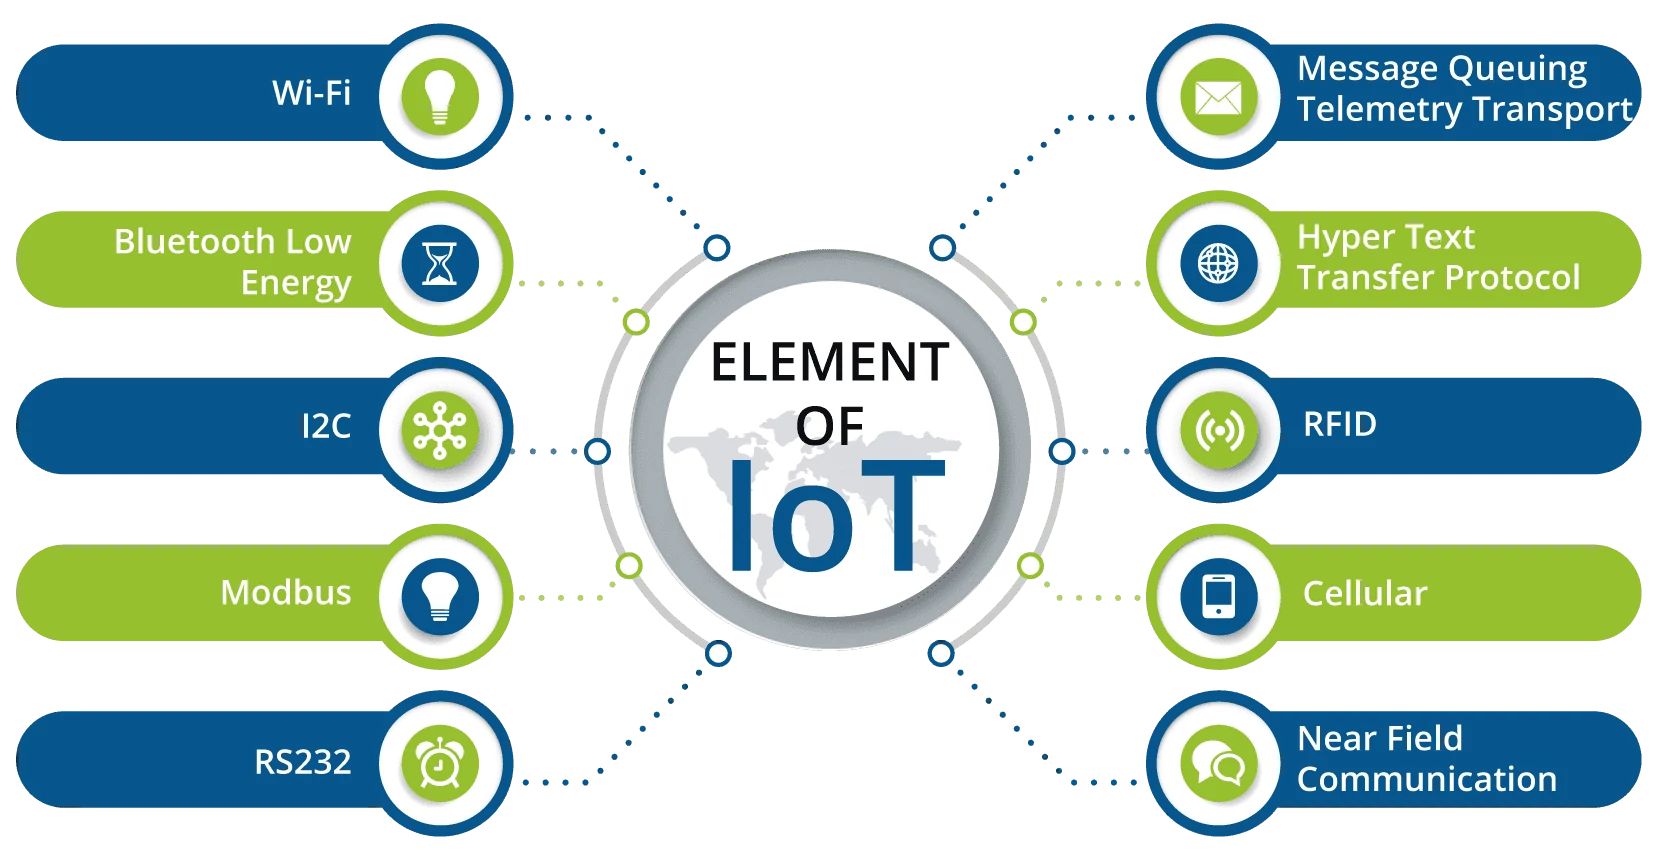 Element Of IoT